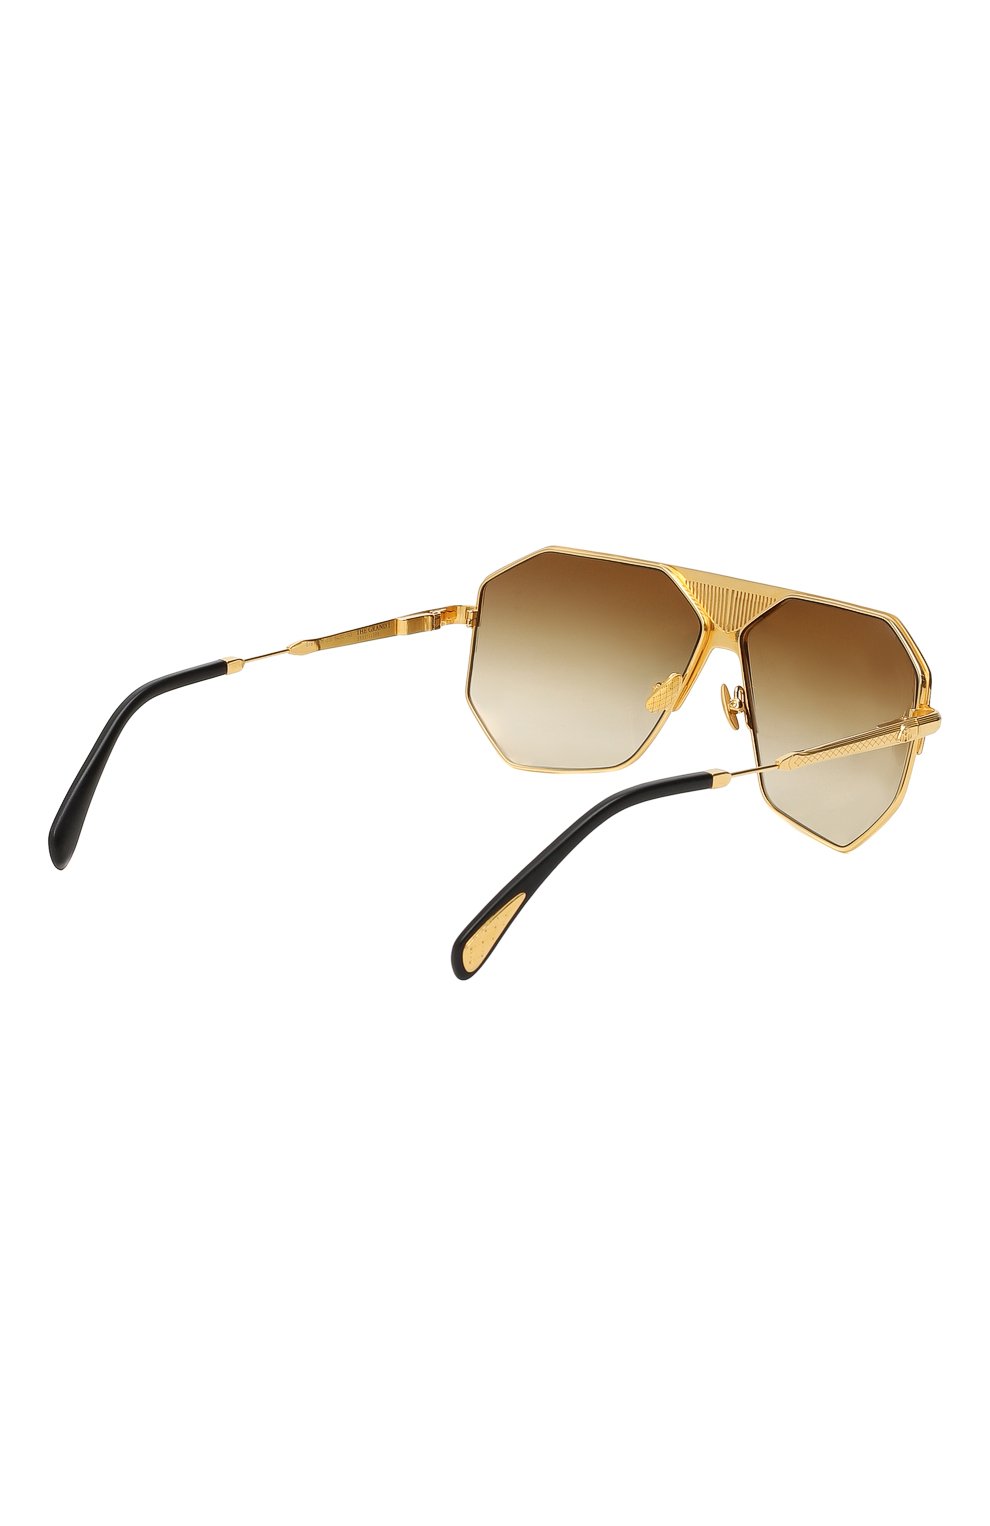 Солнцезащитные очки | Maybach | Золотой - 3